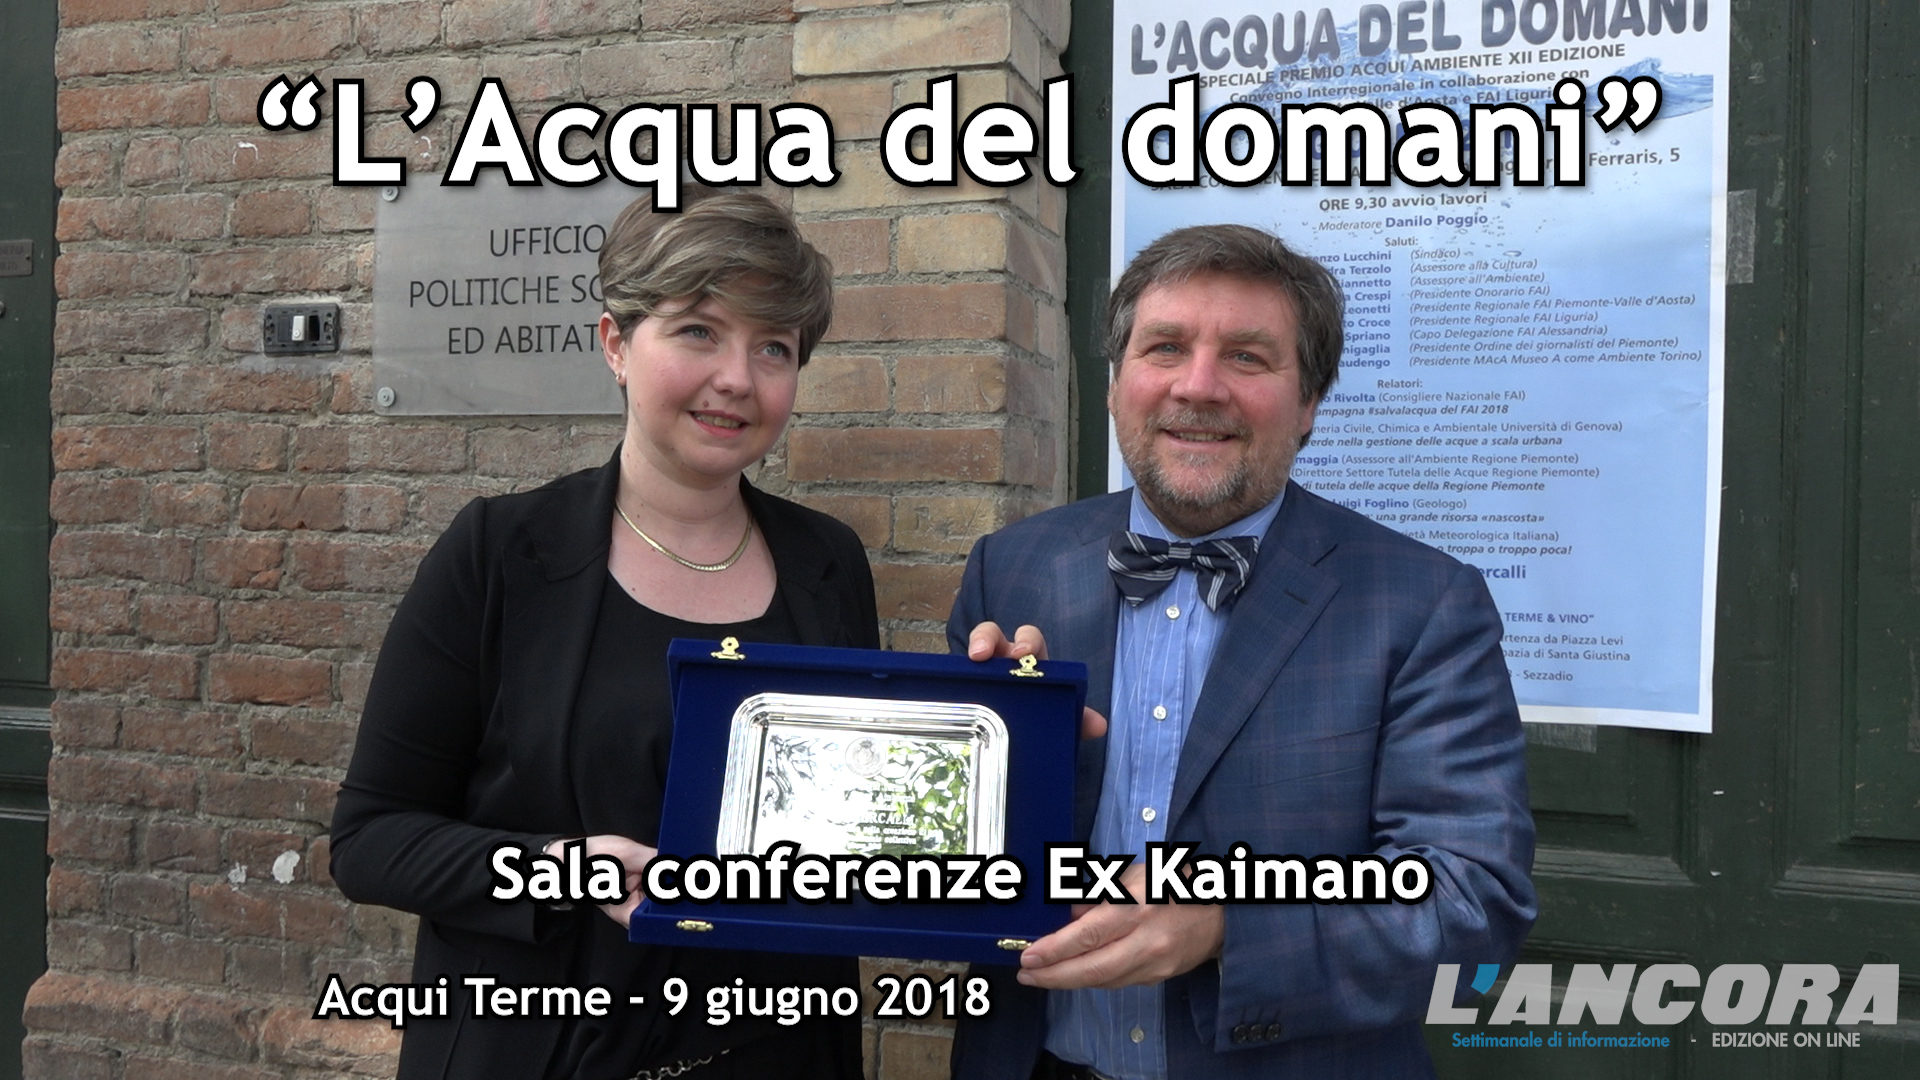 Acqui Terme - "L'Acqua del Domani" premiazione di Luca Mercalli